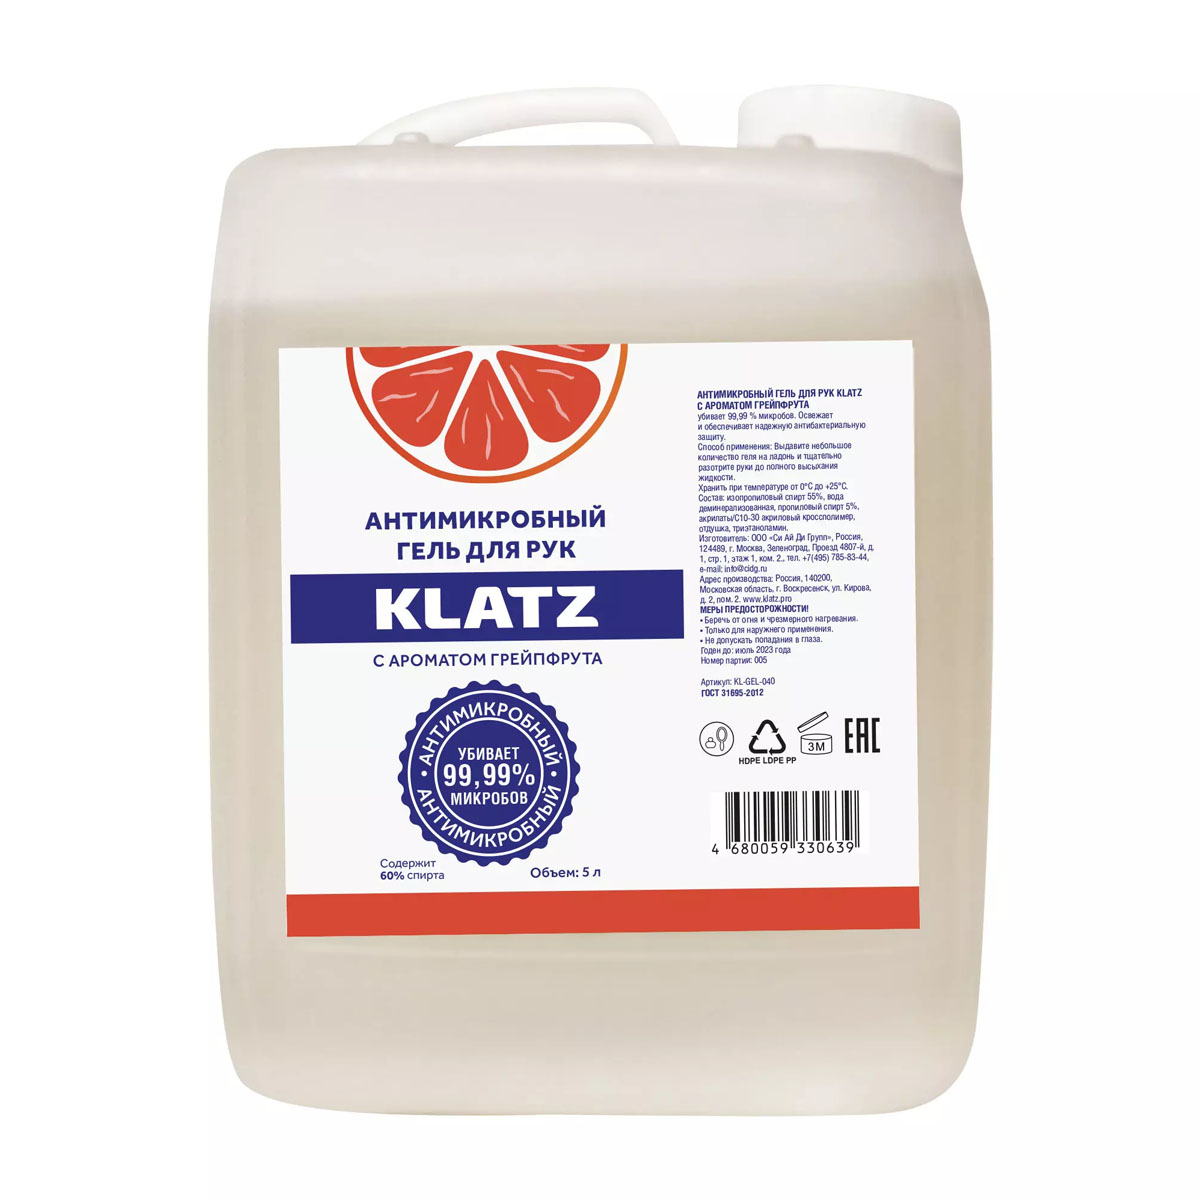 Купить Антимикробный гель для рук KLATZ с ароматом грейпфрута, 5000 мл